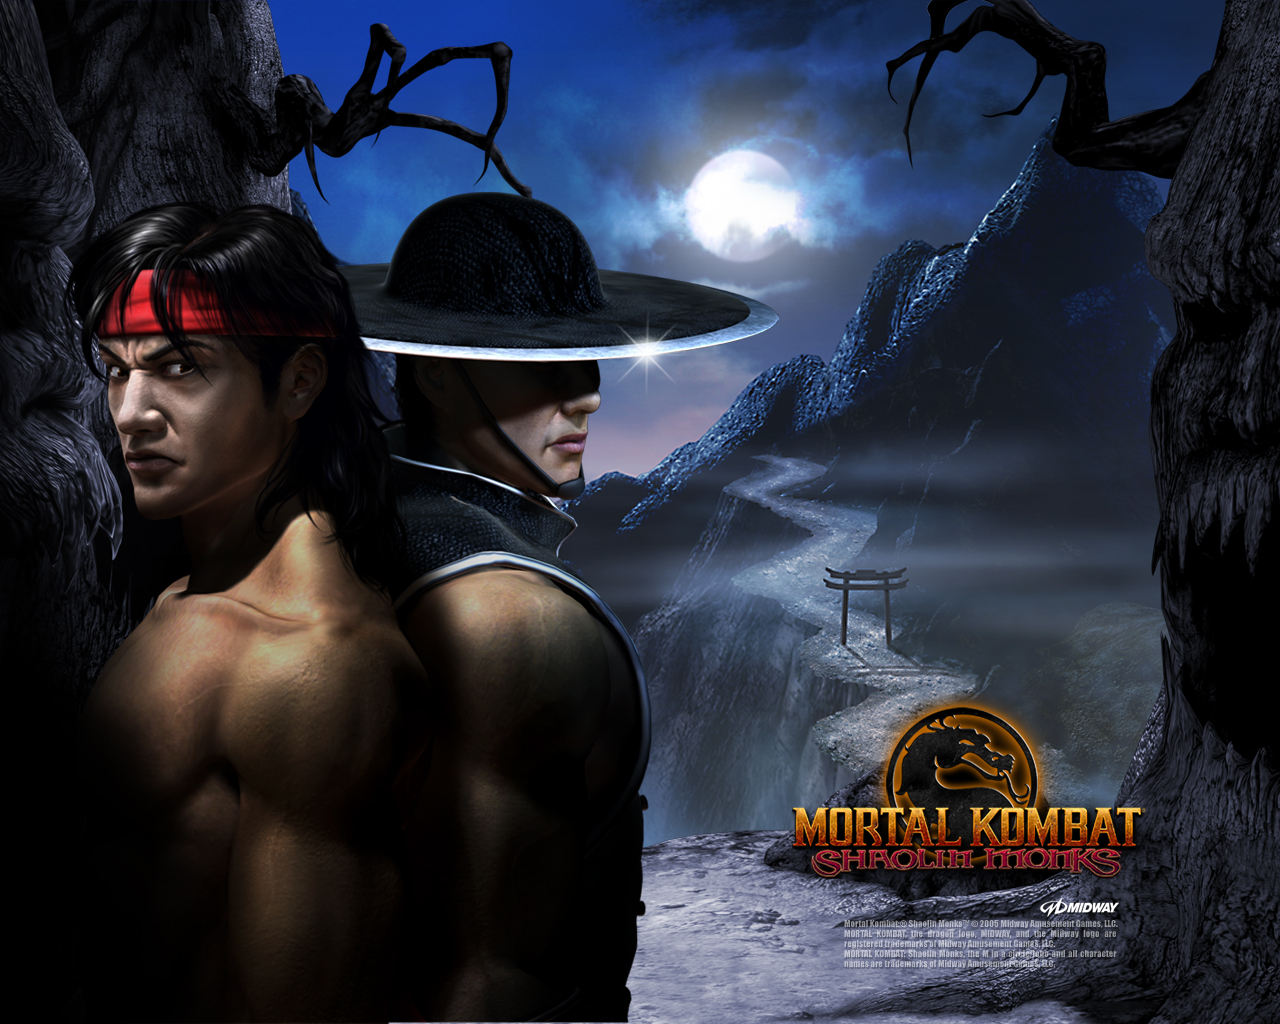 Download HQ Mortal Kombat wallpaper / Games / 1280x1024